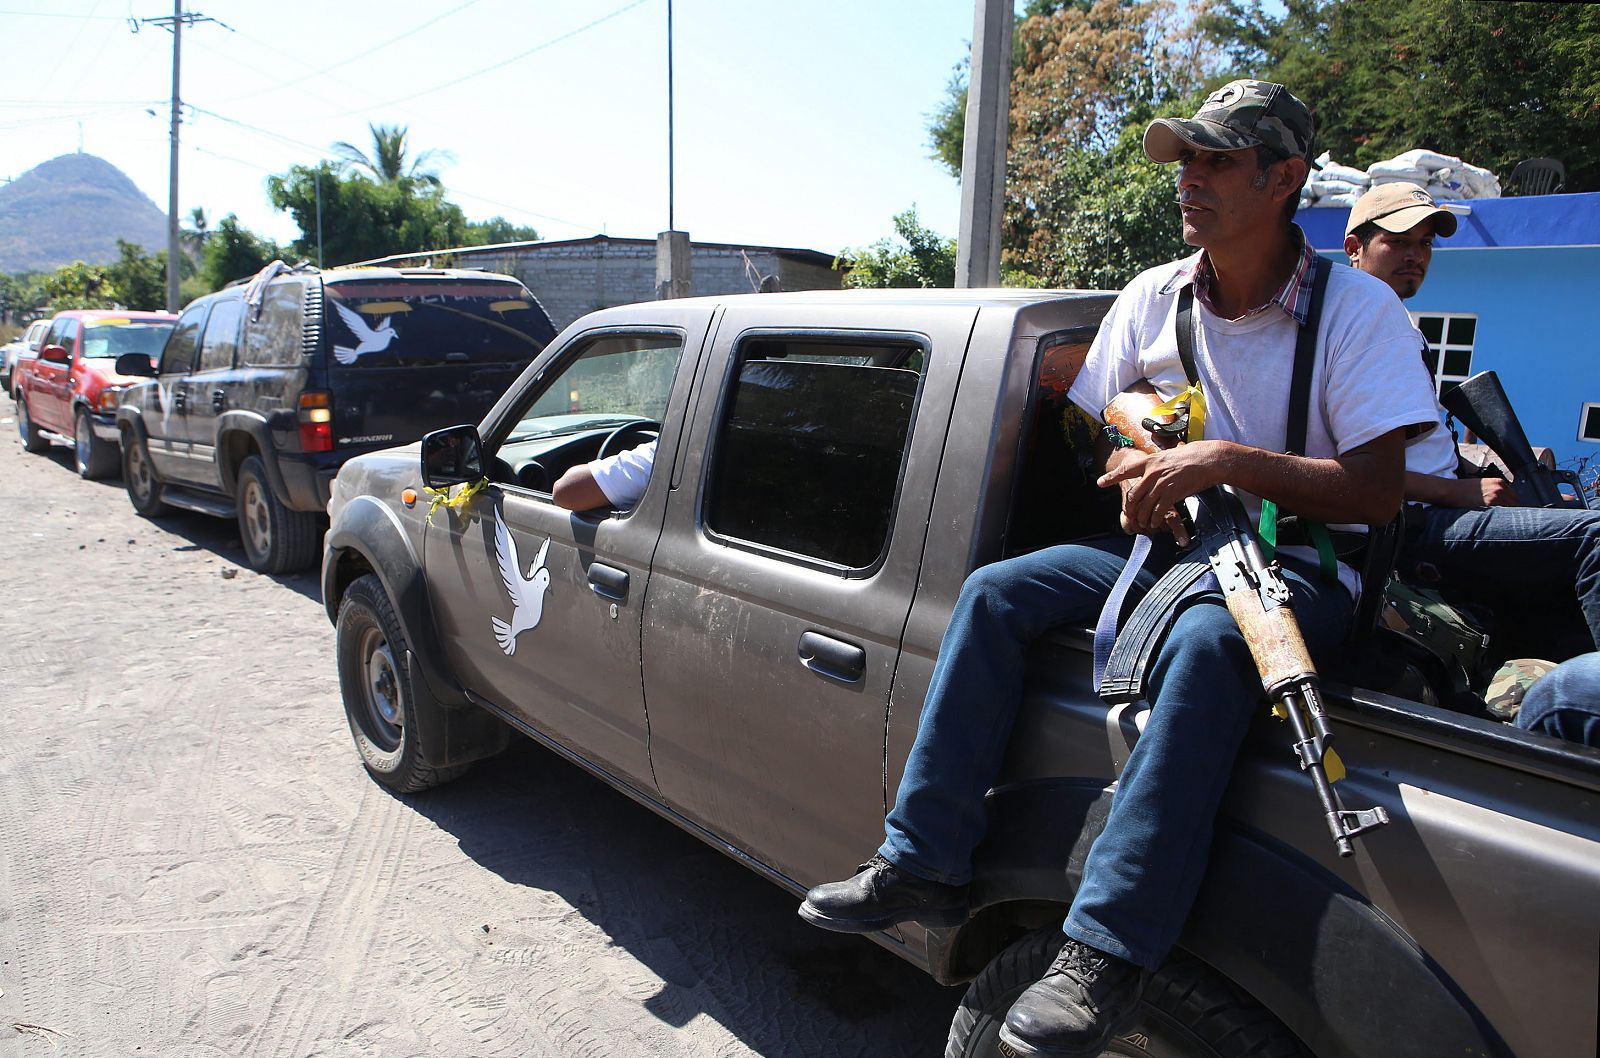 Integrantes de las autodefensas aguardan en un vehículo hoy, martes 21 de enero de 2014, en el municipio de Antúnez (México)